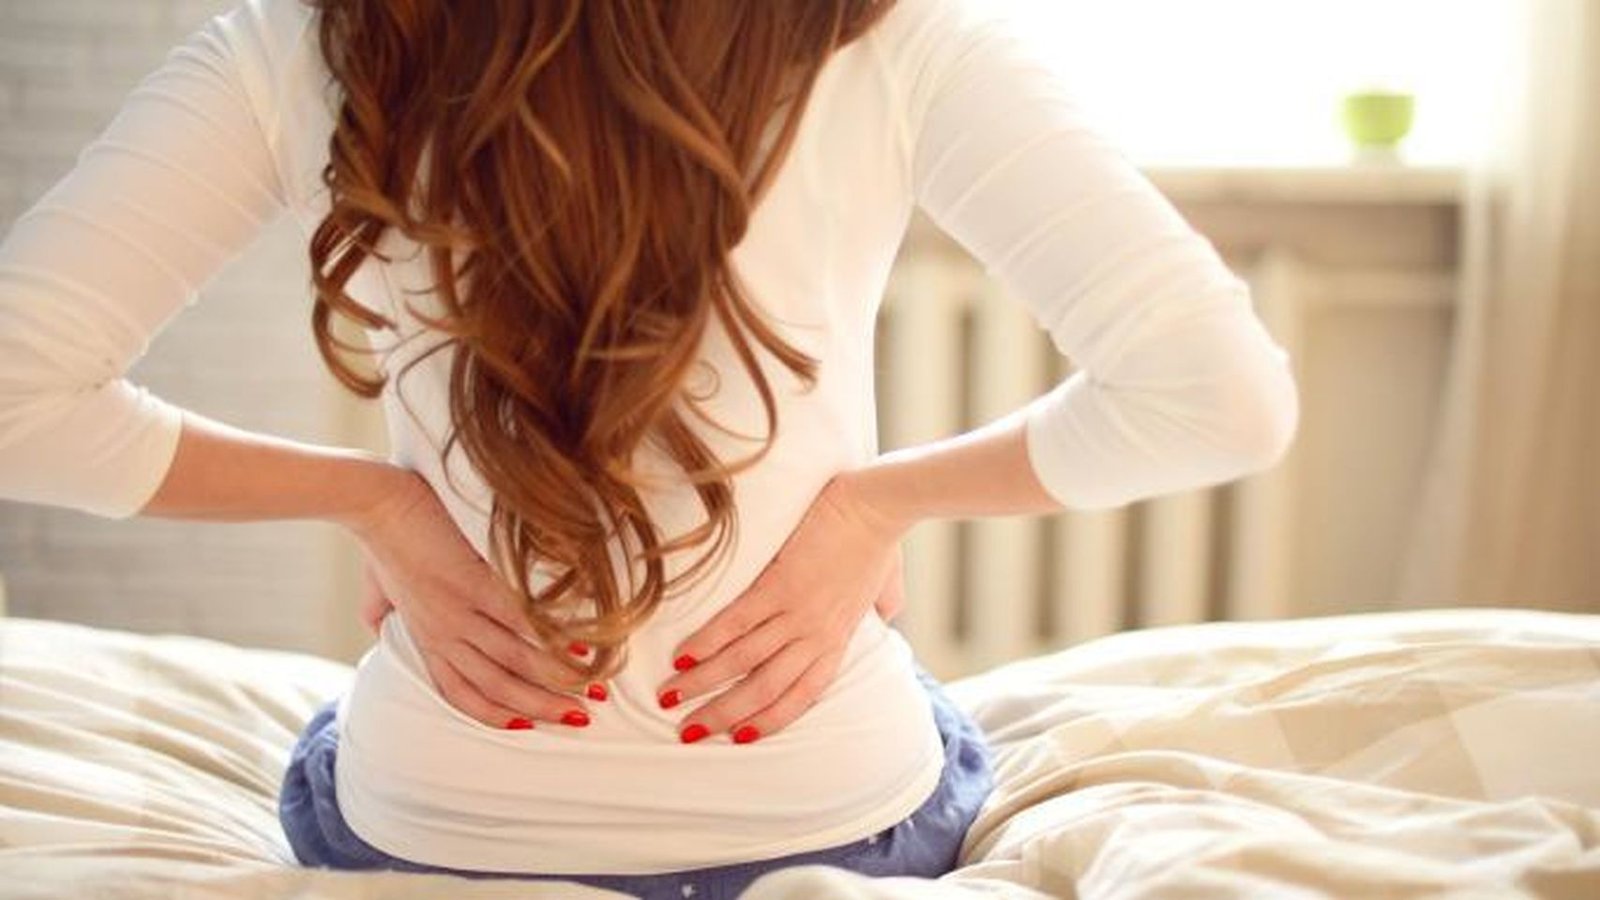 Dolor de espalda: éstos son los mejores alimentos para combatirlo (y los que debes evitar)